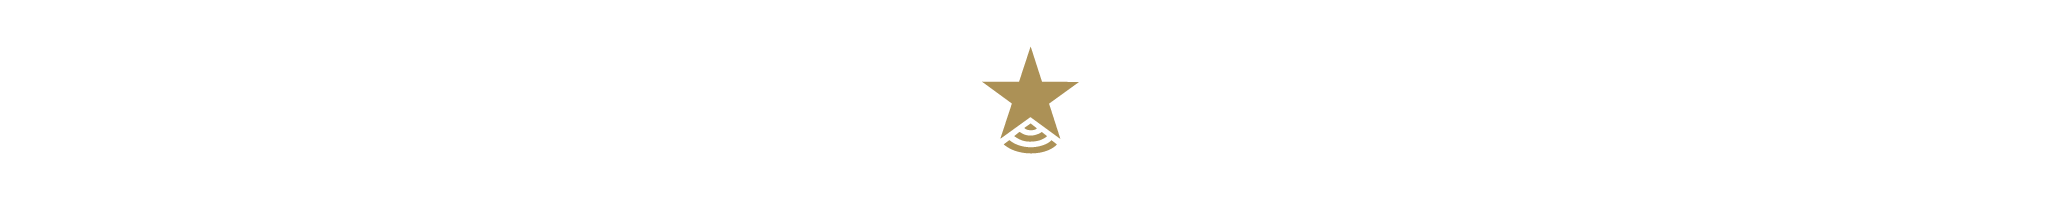 DOIT Tech Star logo